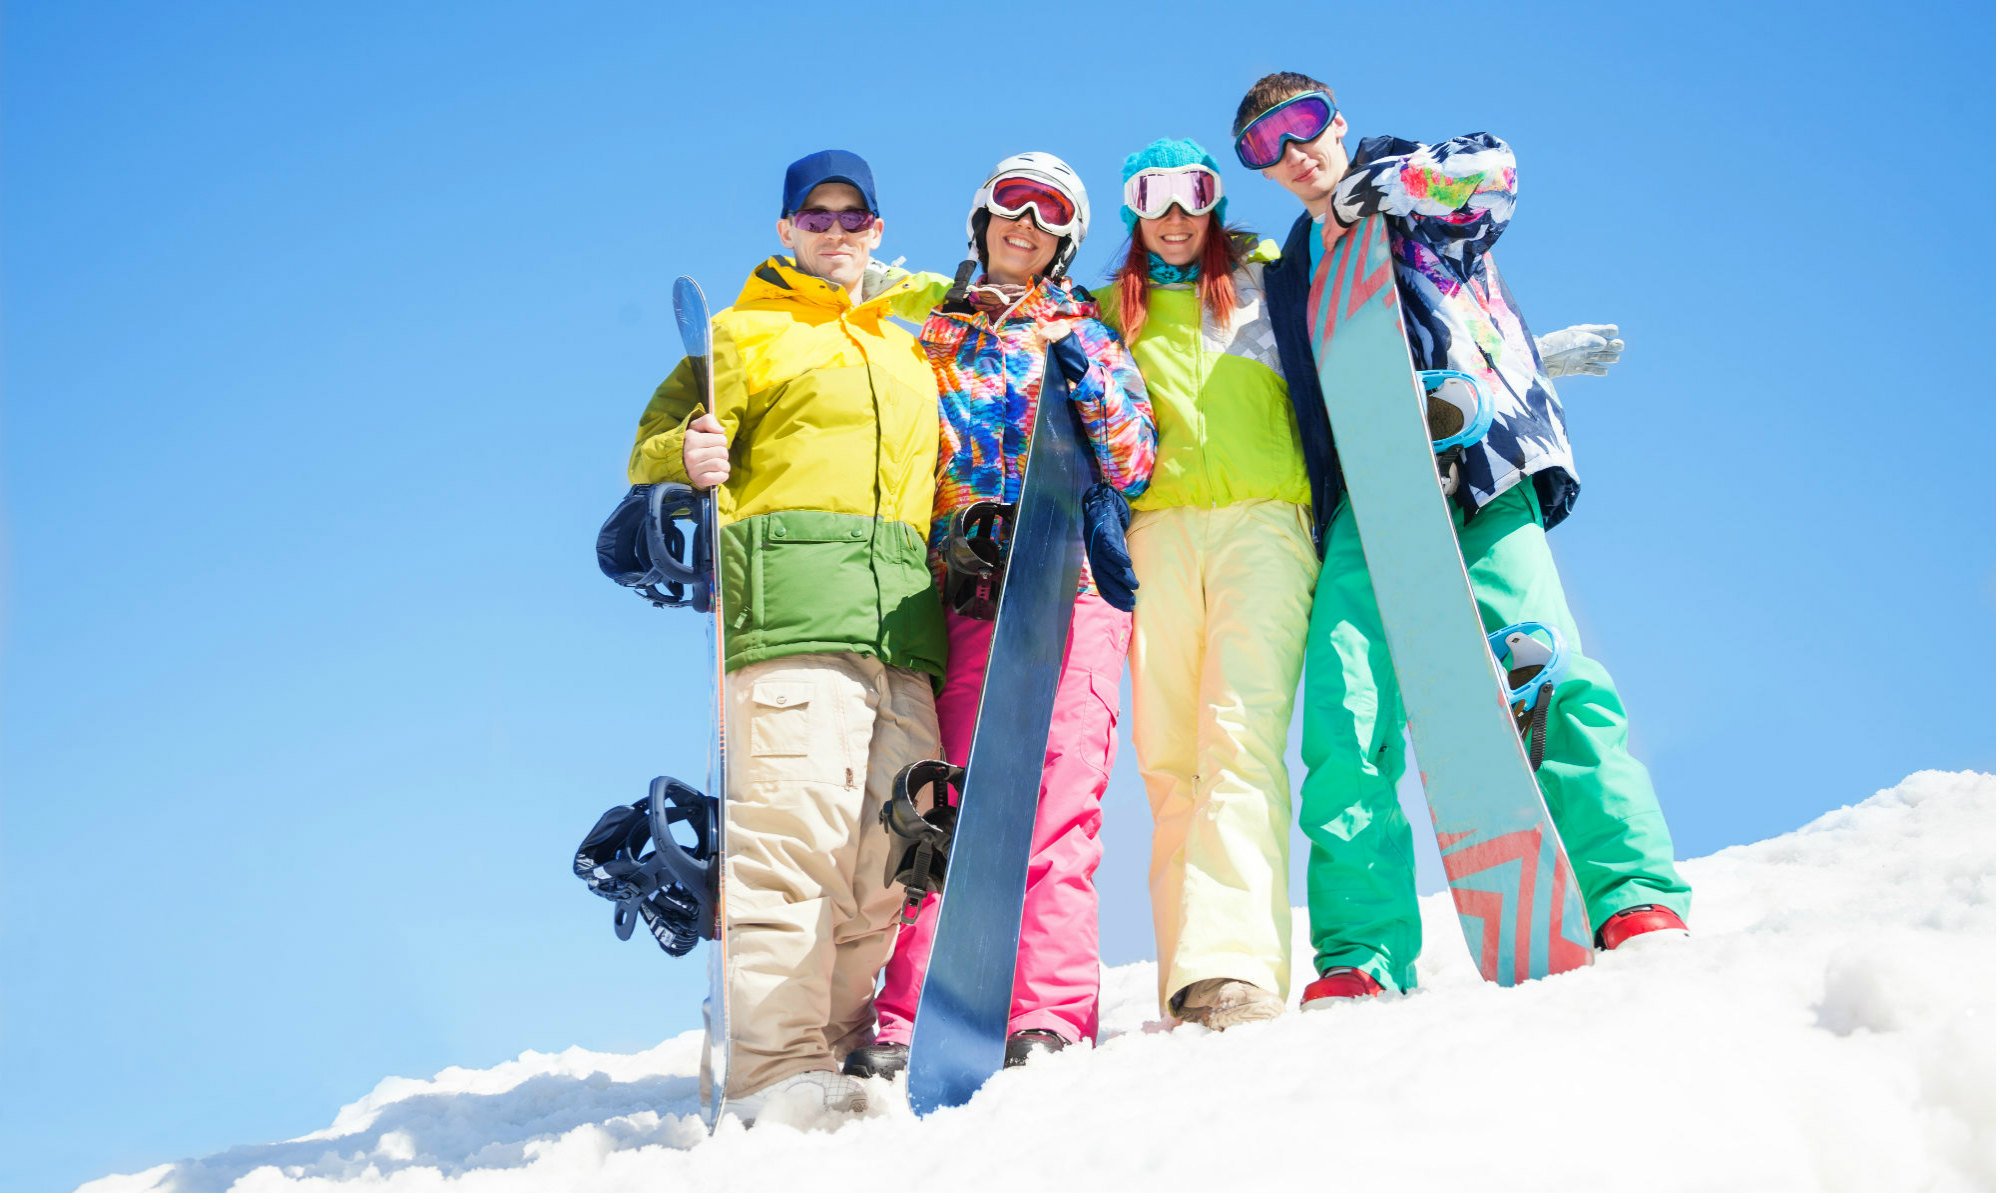 Un gruppo di amici in posa sulla neve con i loro snowboard.